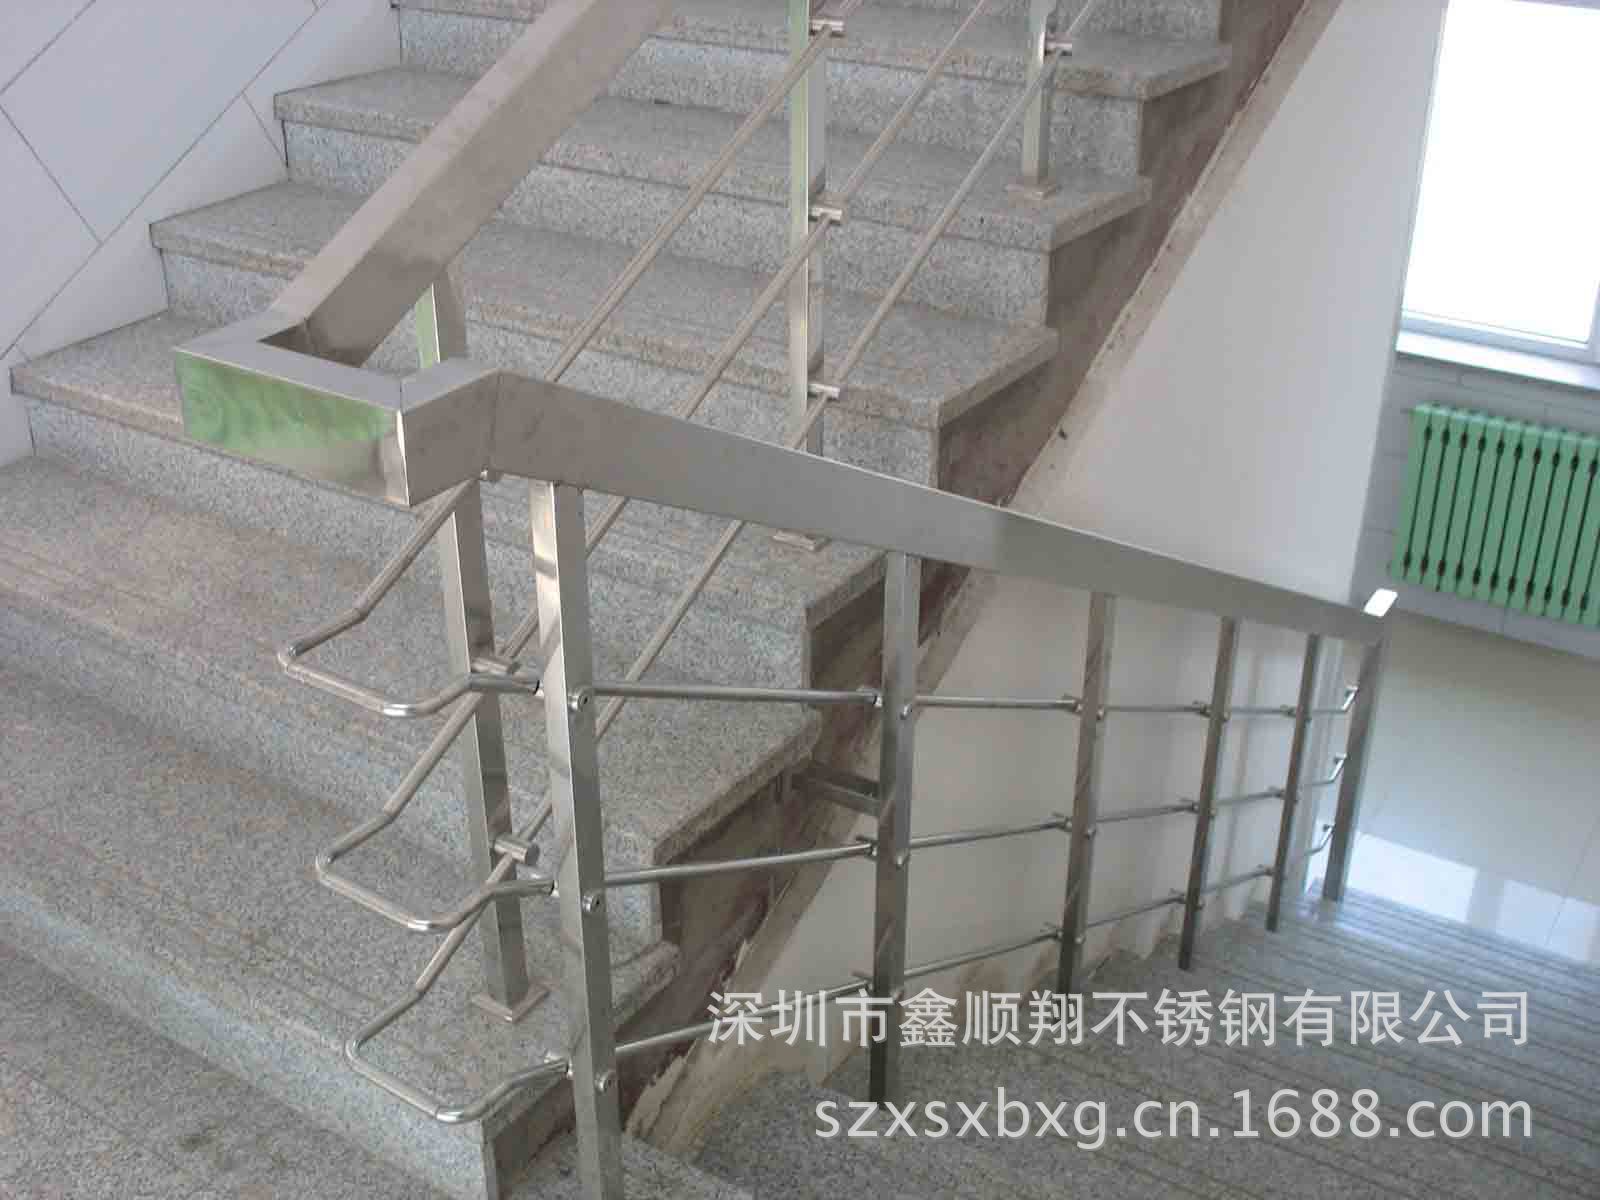 供应不锈钢扶手 家用楼梯扶手 钢化玻璃扶手 厂价直销